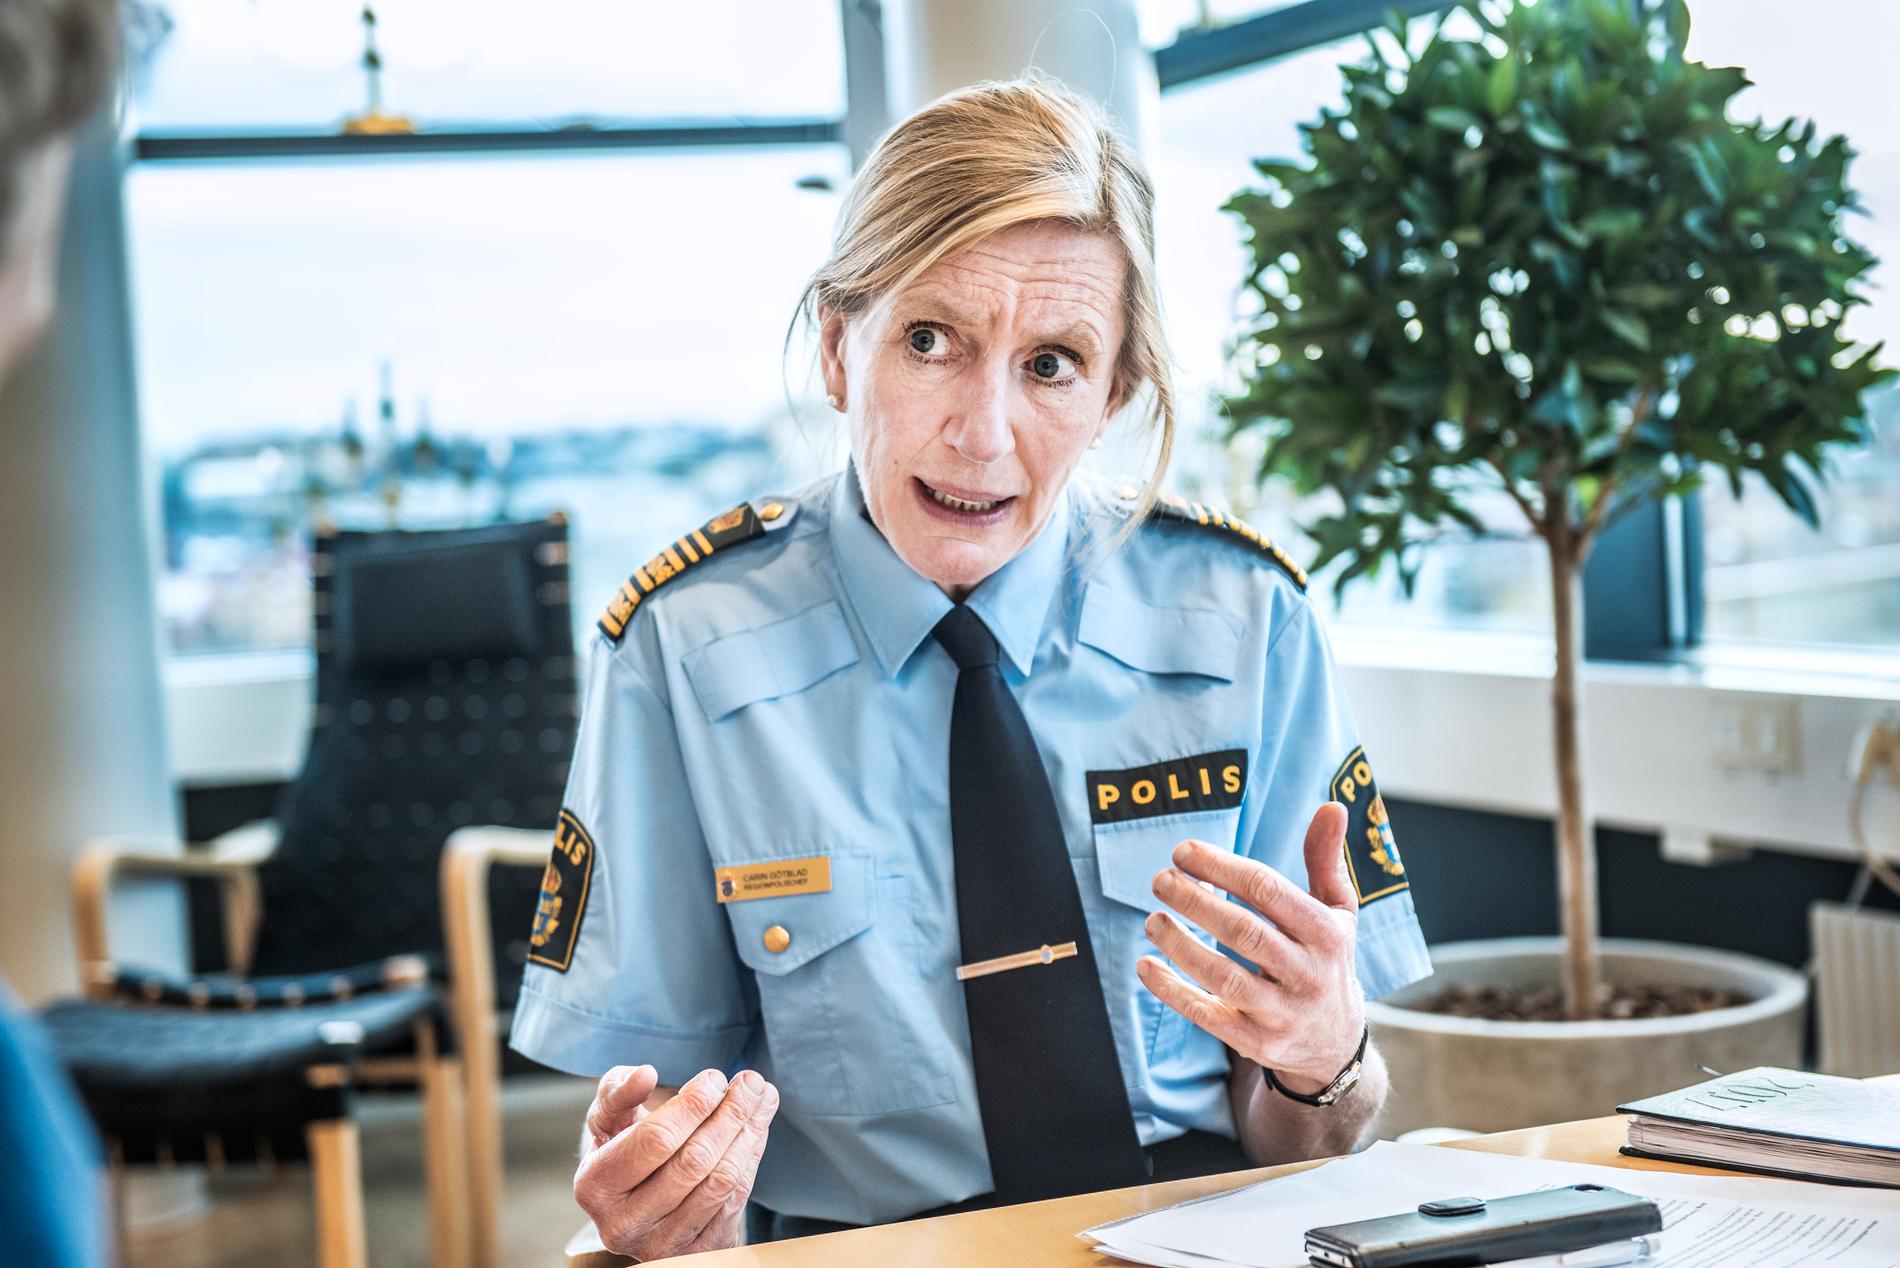 Lena Tysks kompetens kommer att tillvaratas, säger Carin Götblad, regionpolischef Mitt.